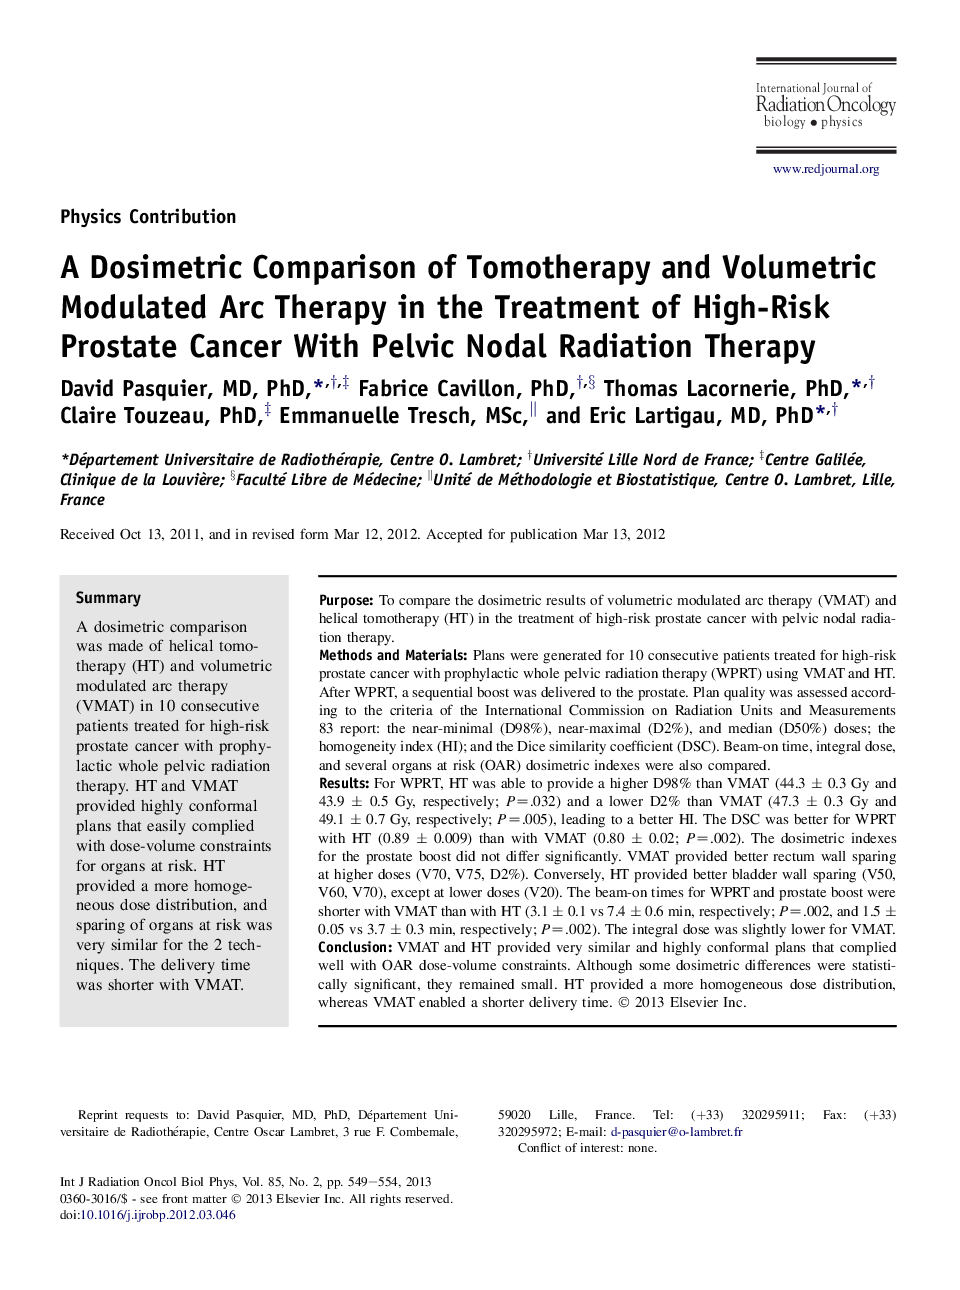 مقایسه دزیمتری تام تراپی و مداخله گر محیطی در درمان سرطان پروستات با خطر بالا با درمان تابشی طبیعی 